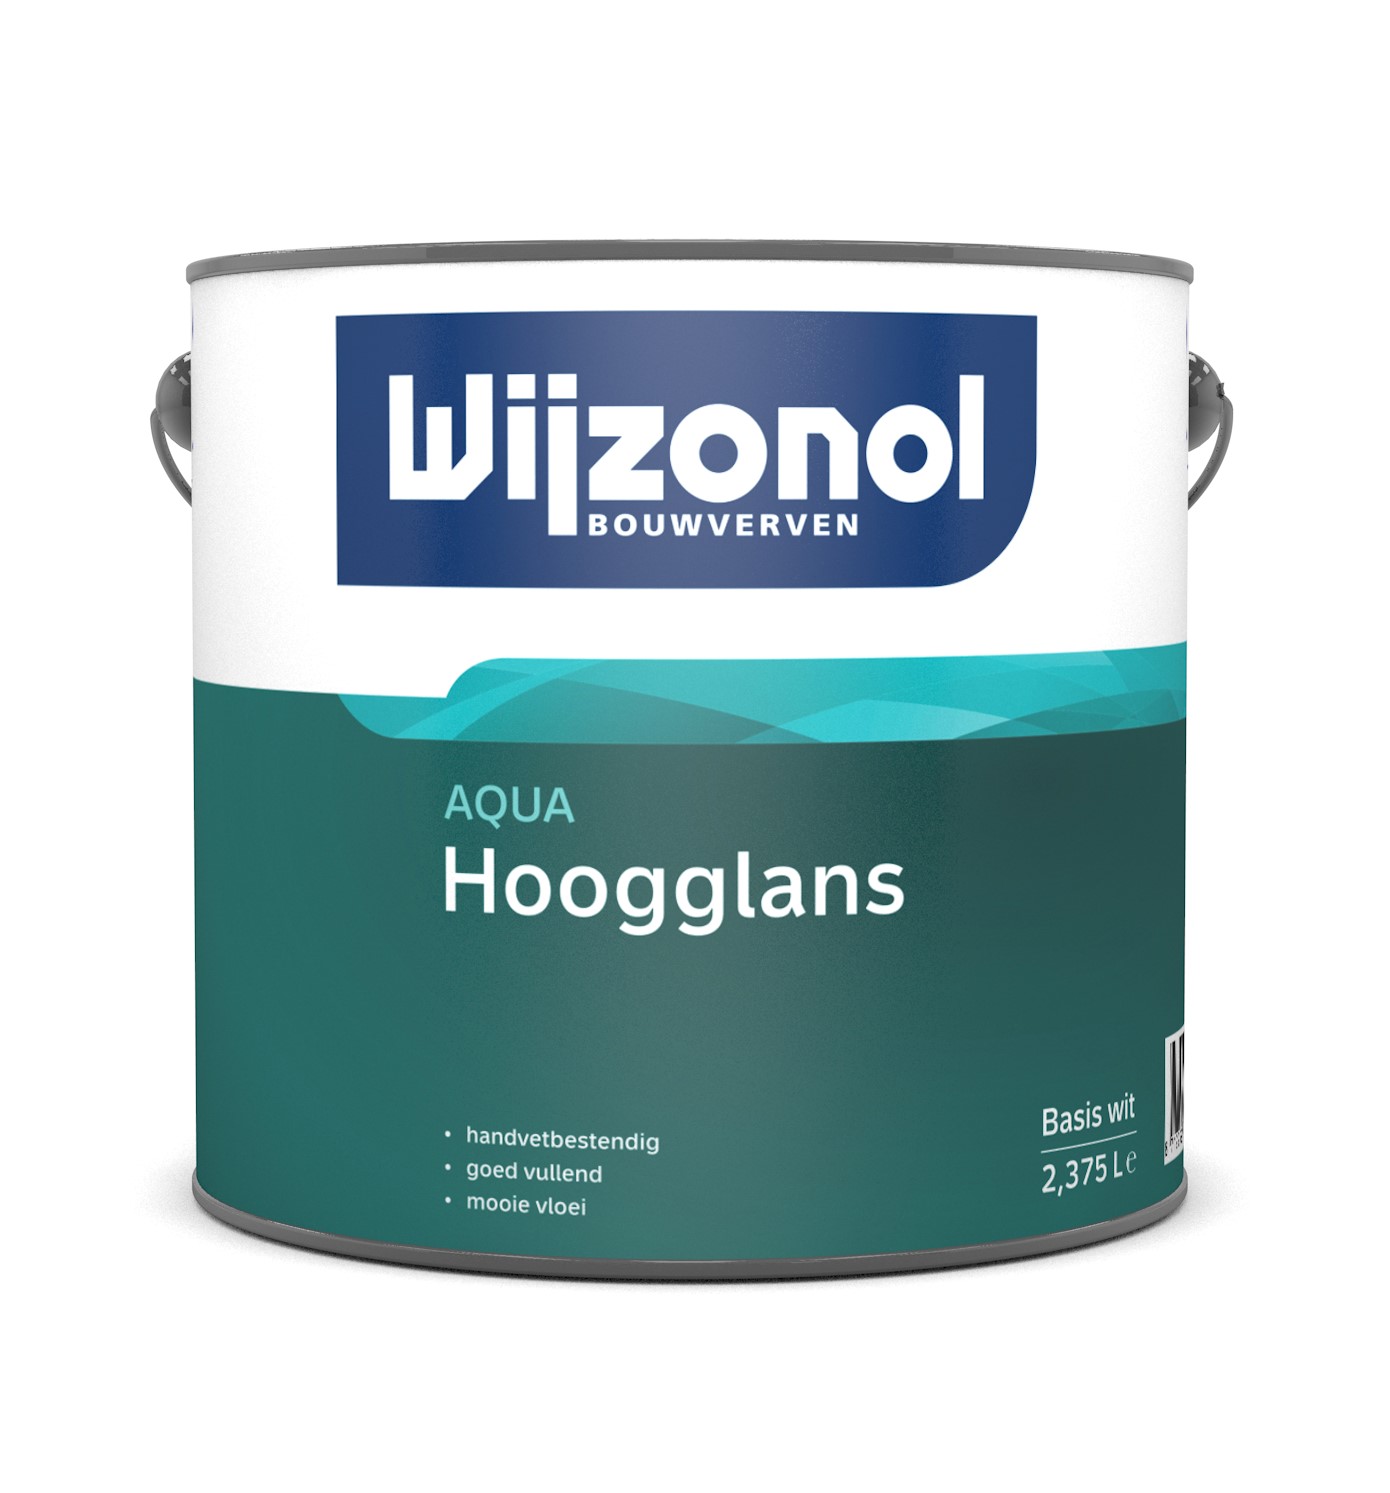 Wijzonol Aqua Hoogglans